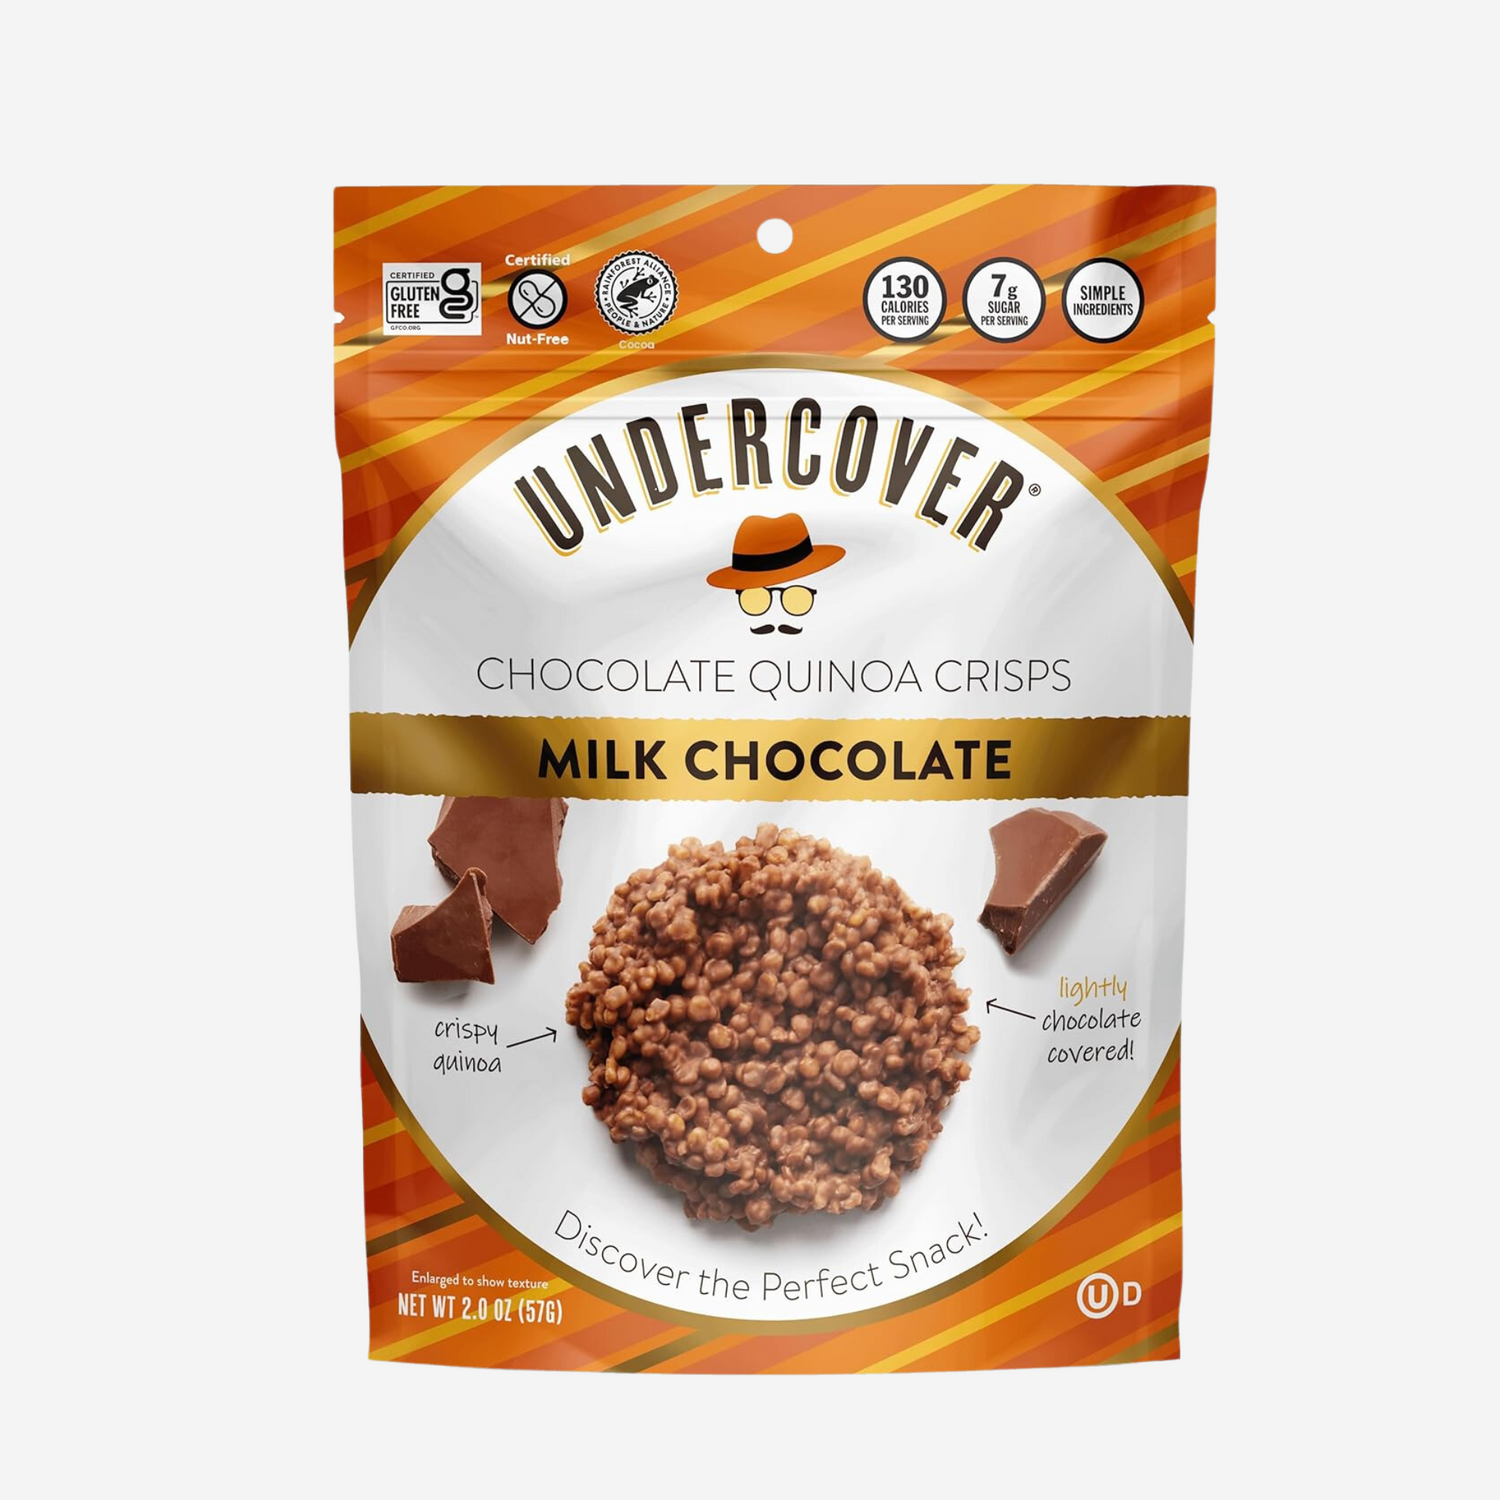 Undercover Chocolate Quinoa Crisps Milk Chocolate Quinoa Crisps 8-Pack, 2oz Bags